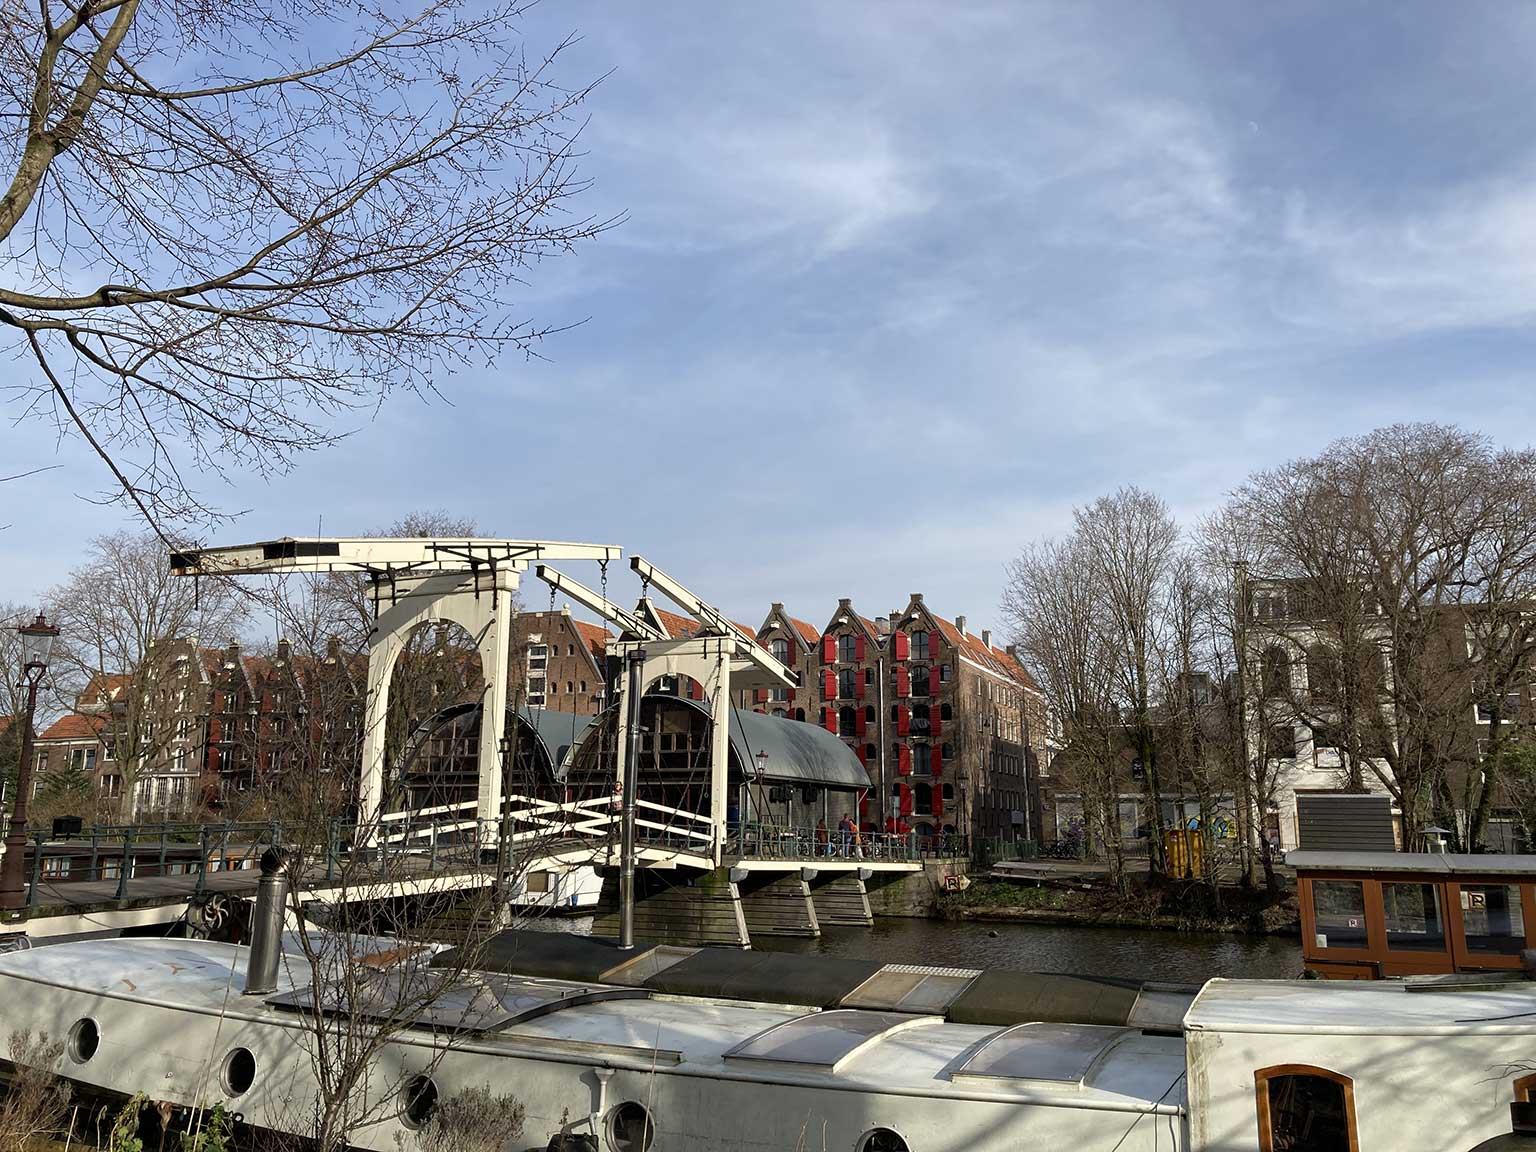 Sloterdijkerbrug, Amsterdam, seen from Nieuwe Teertuinen